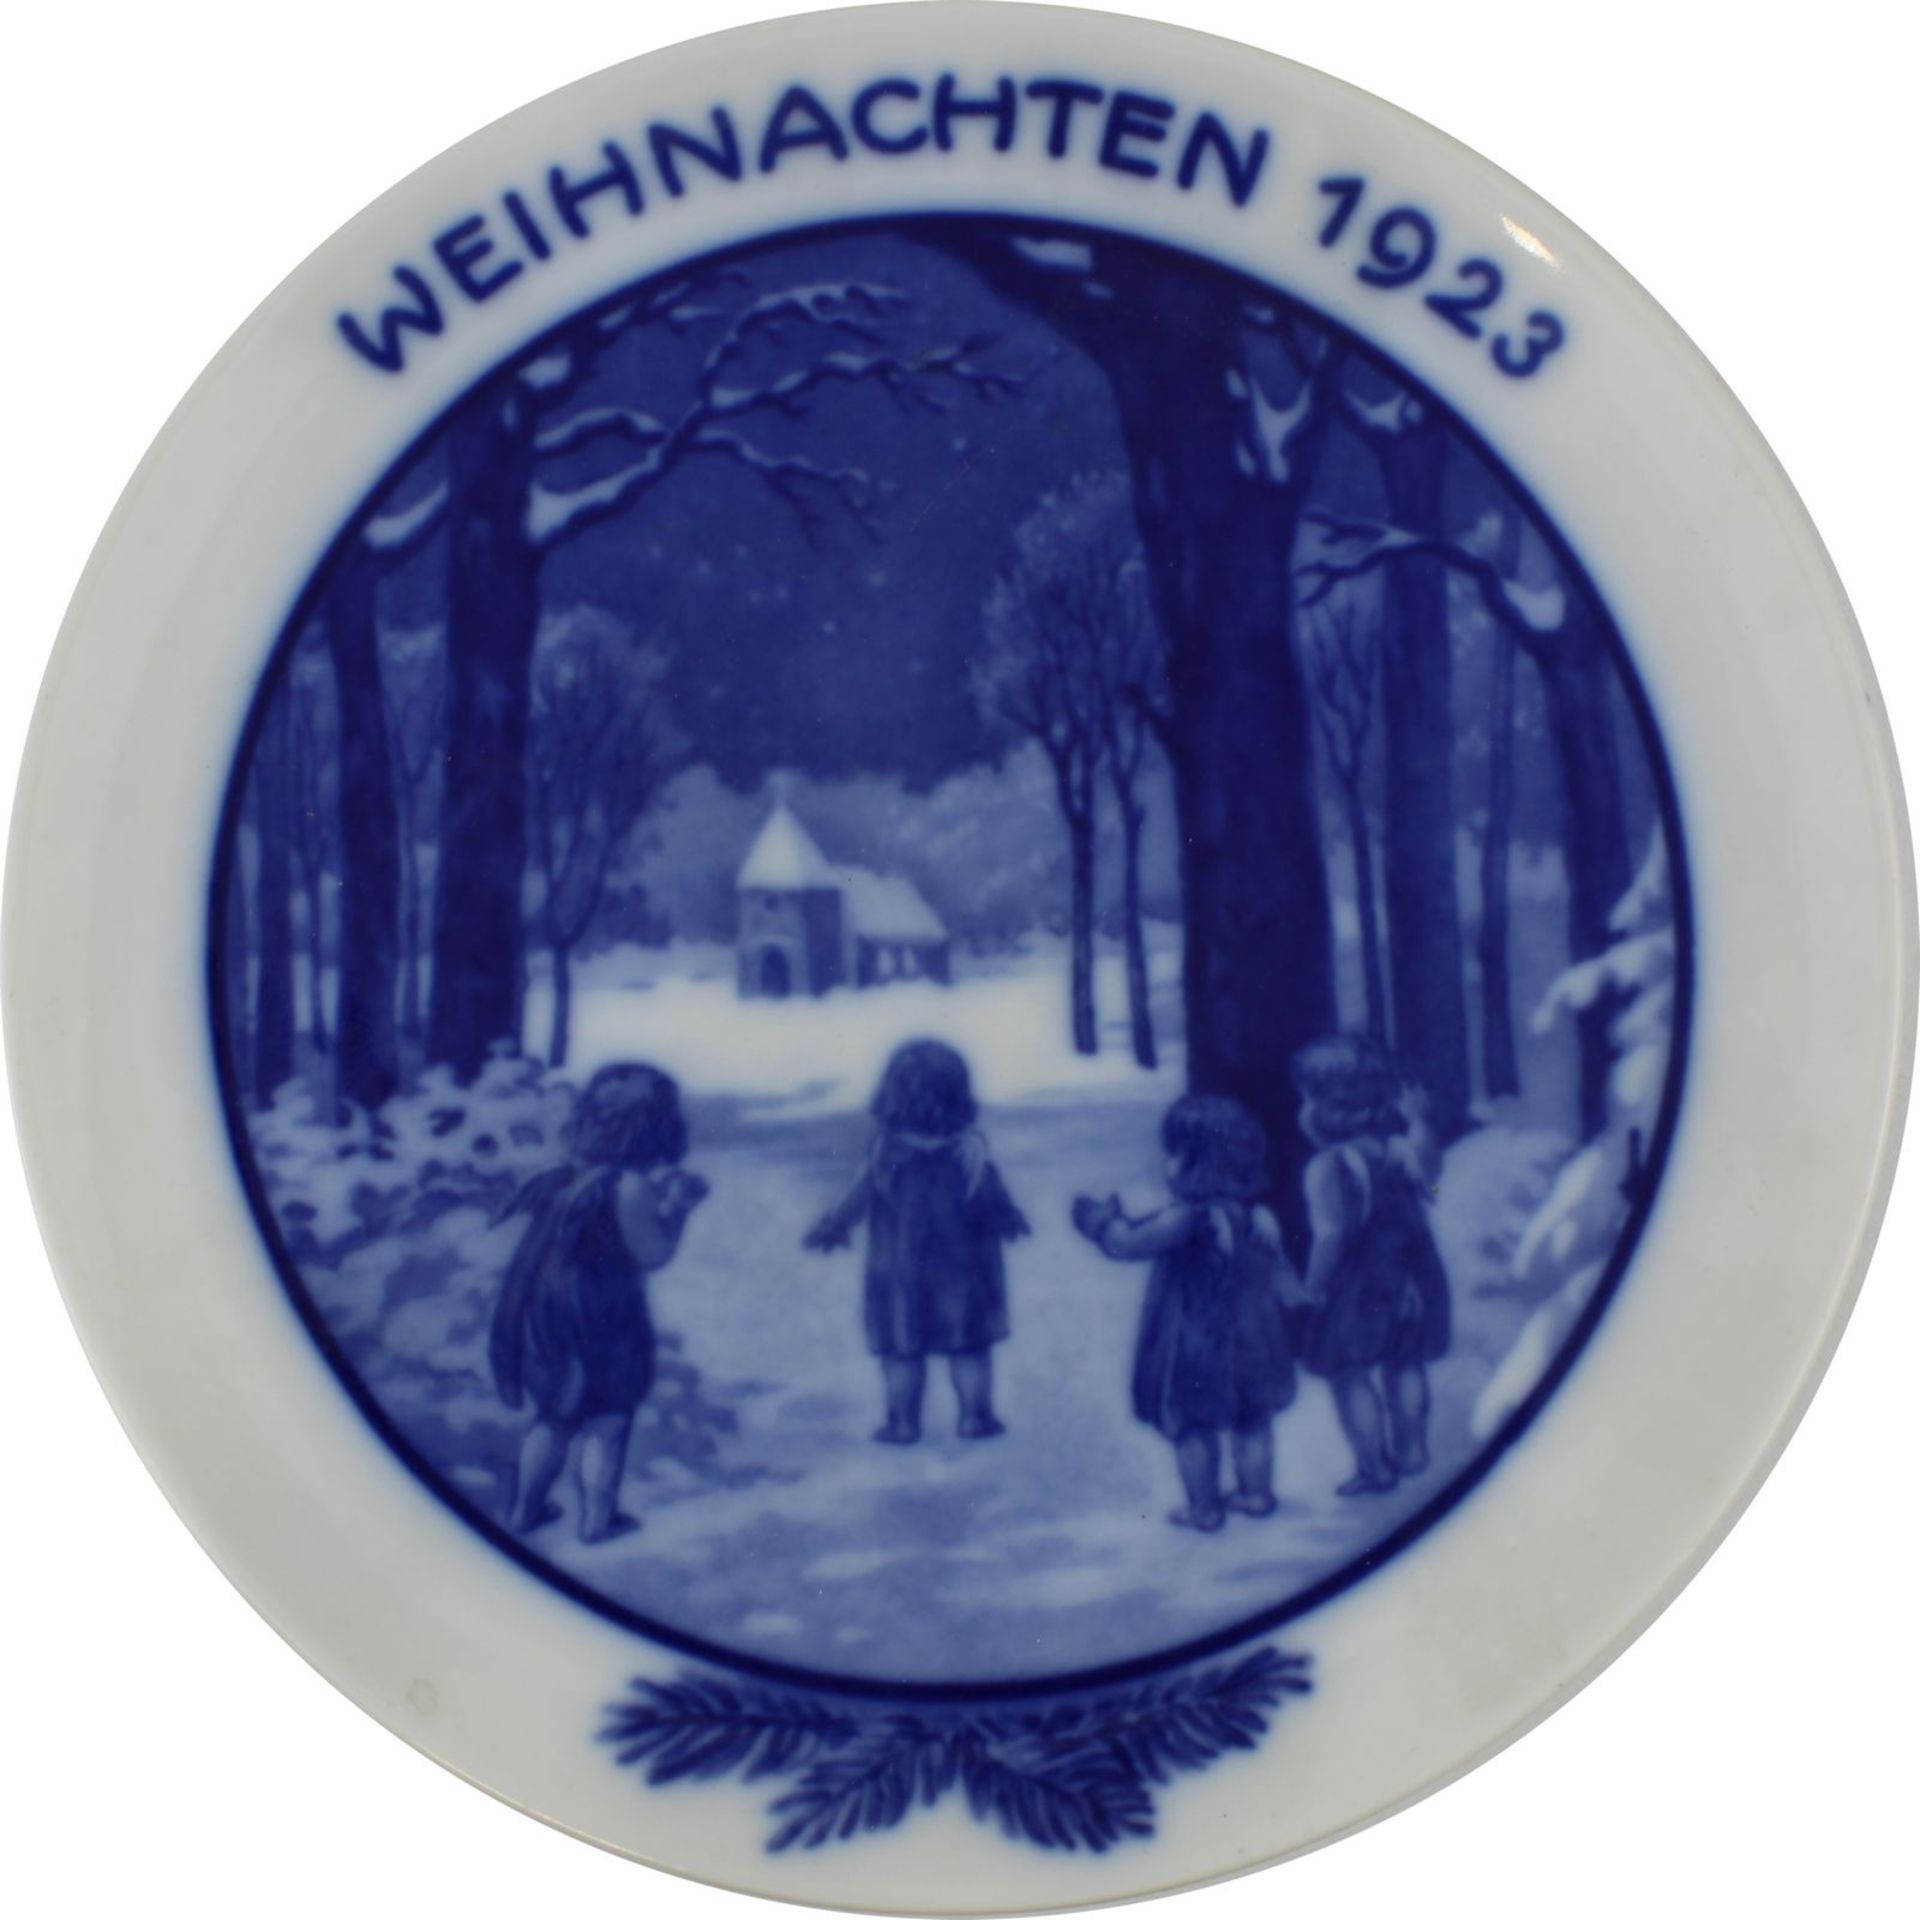 Fünf Teller, Rosenthal-Porzellan 1920er Jahre, vier Weihnachtsteller: 1923, kleine Engel vor Kirche, - Image 2 of 6